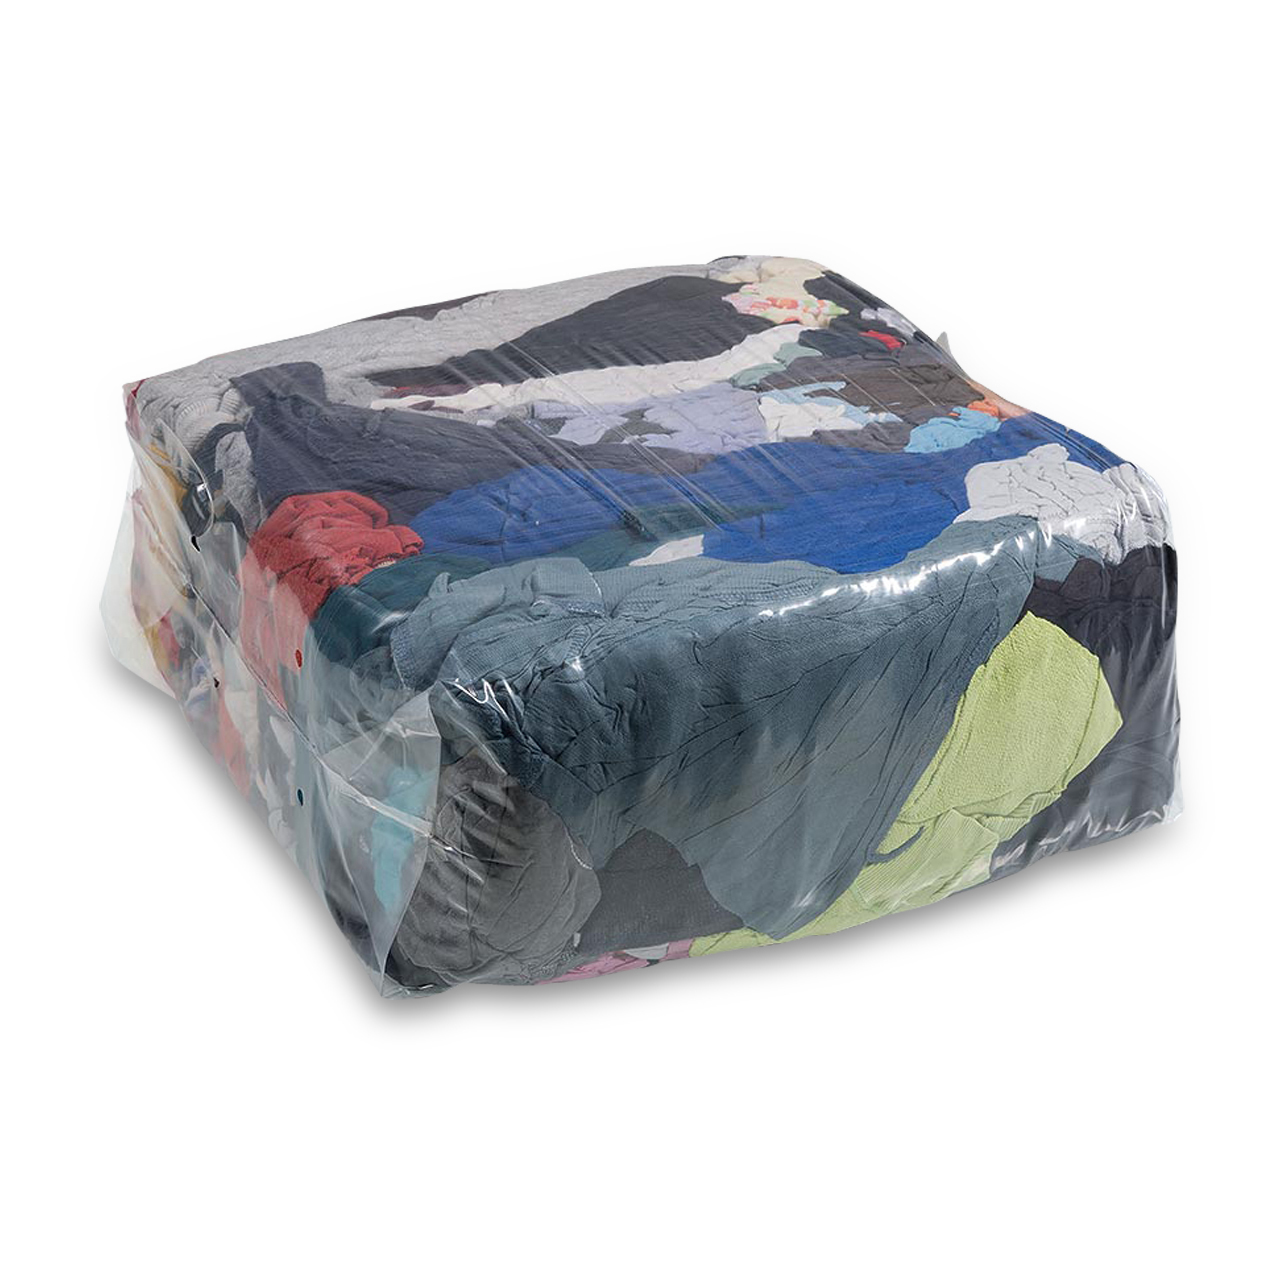 BENILINE® Chiffons de nettoyage tricot colorés orig